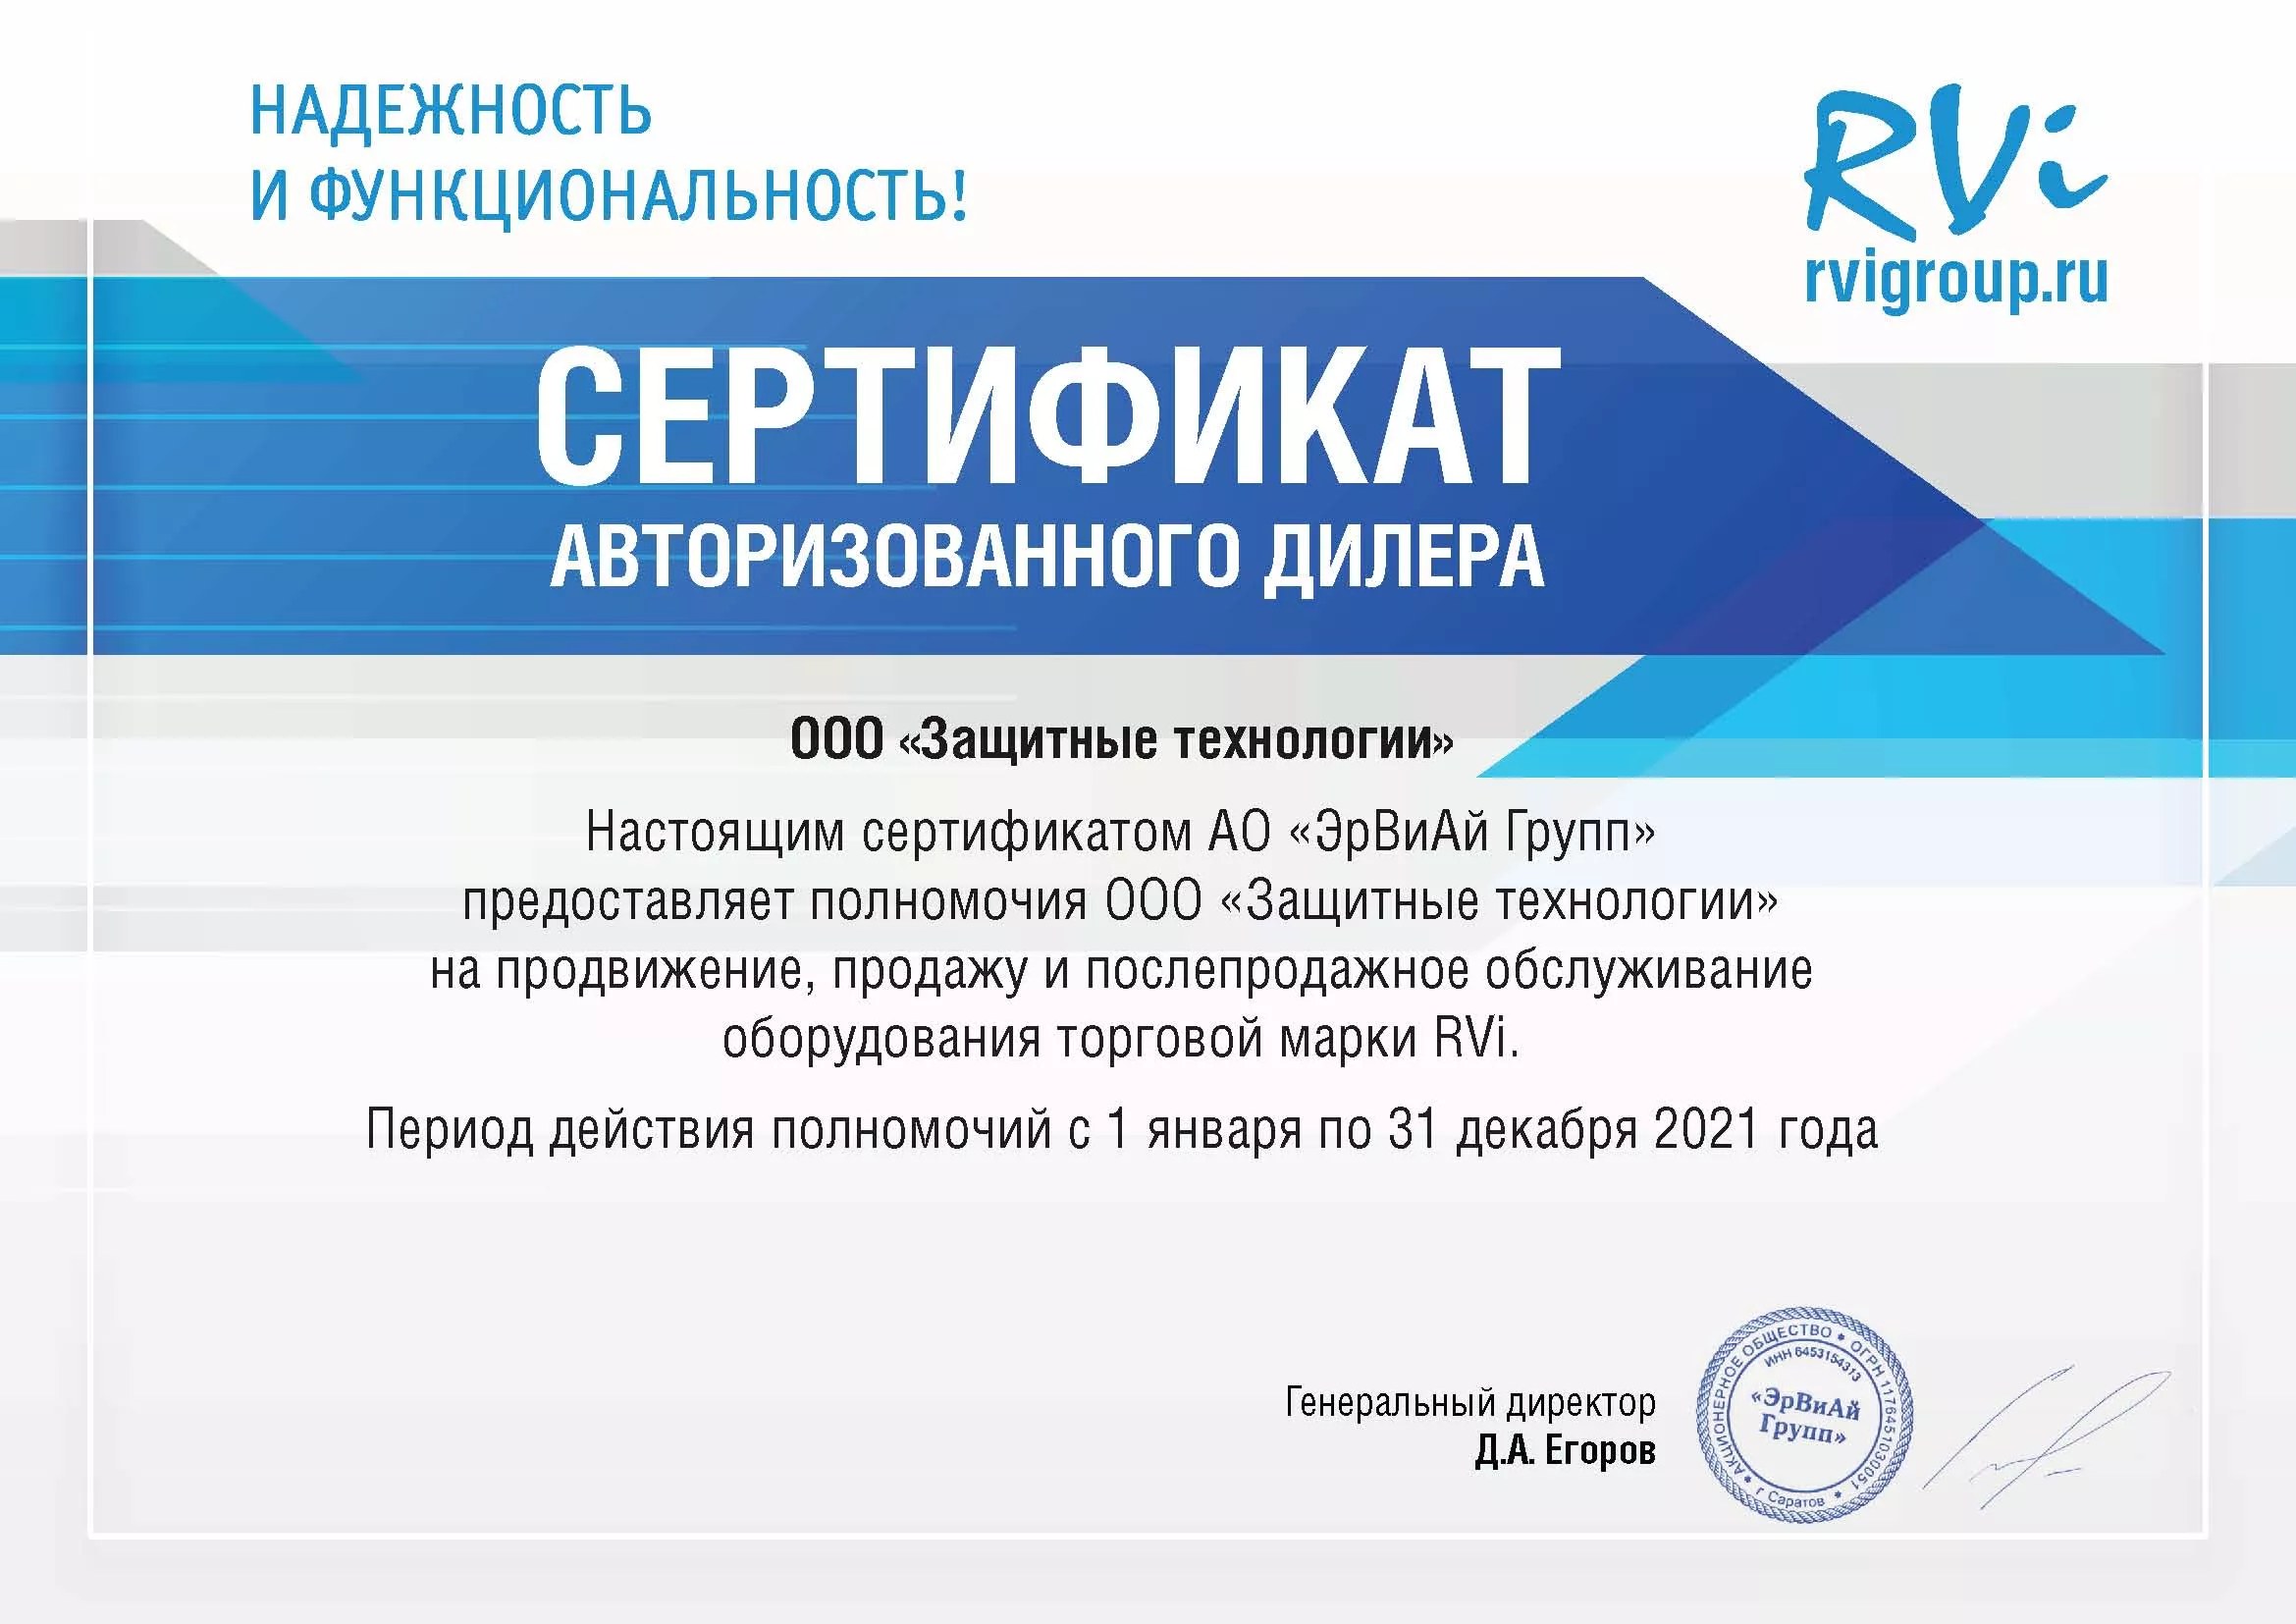 Сертификат авторизованного дилера RVi 2021